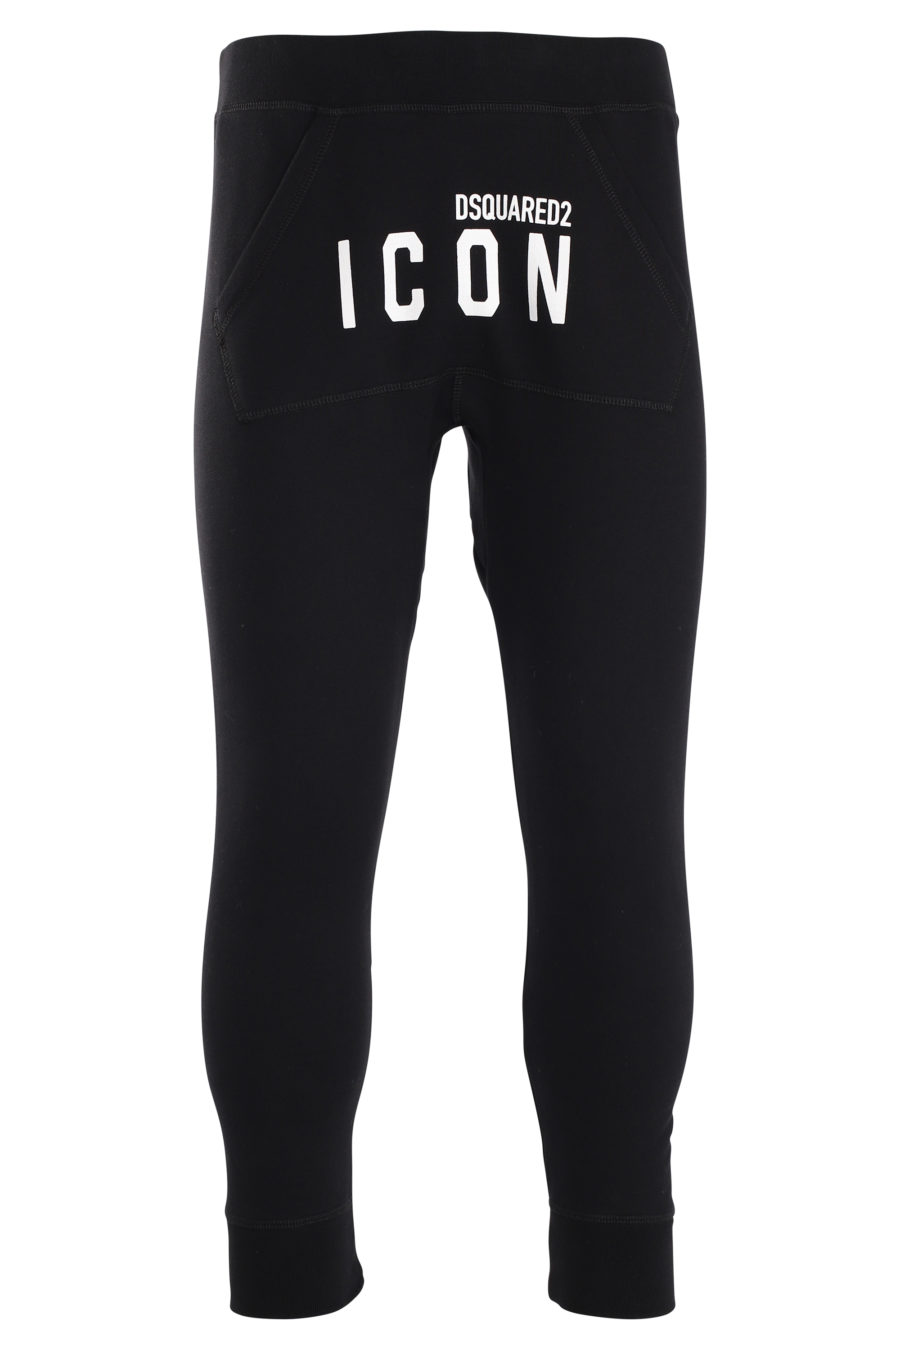 Pantalón de chándal negro con logo "icon" frontal - IMG 0015